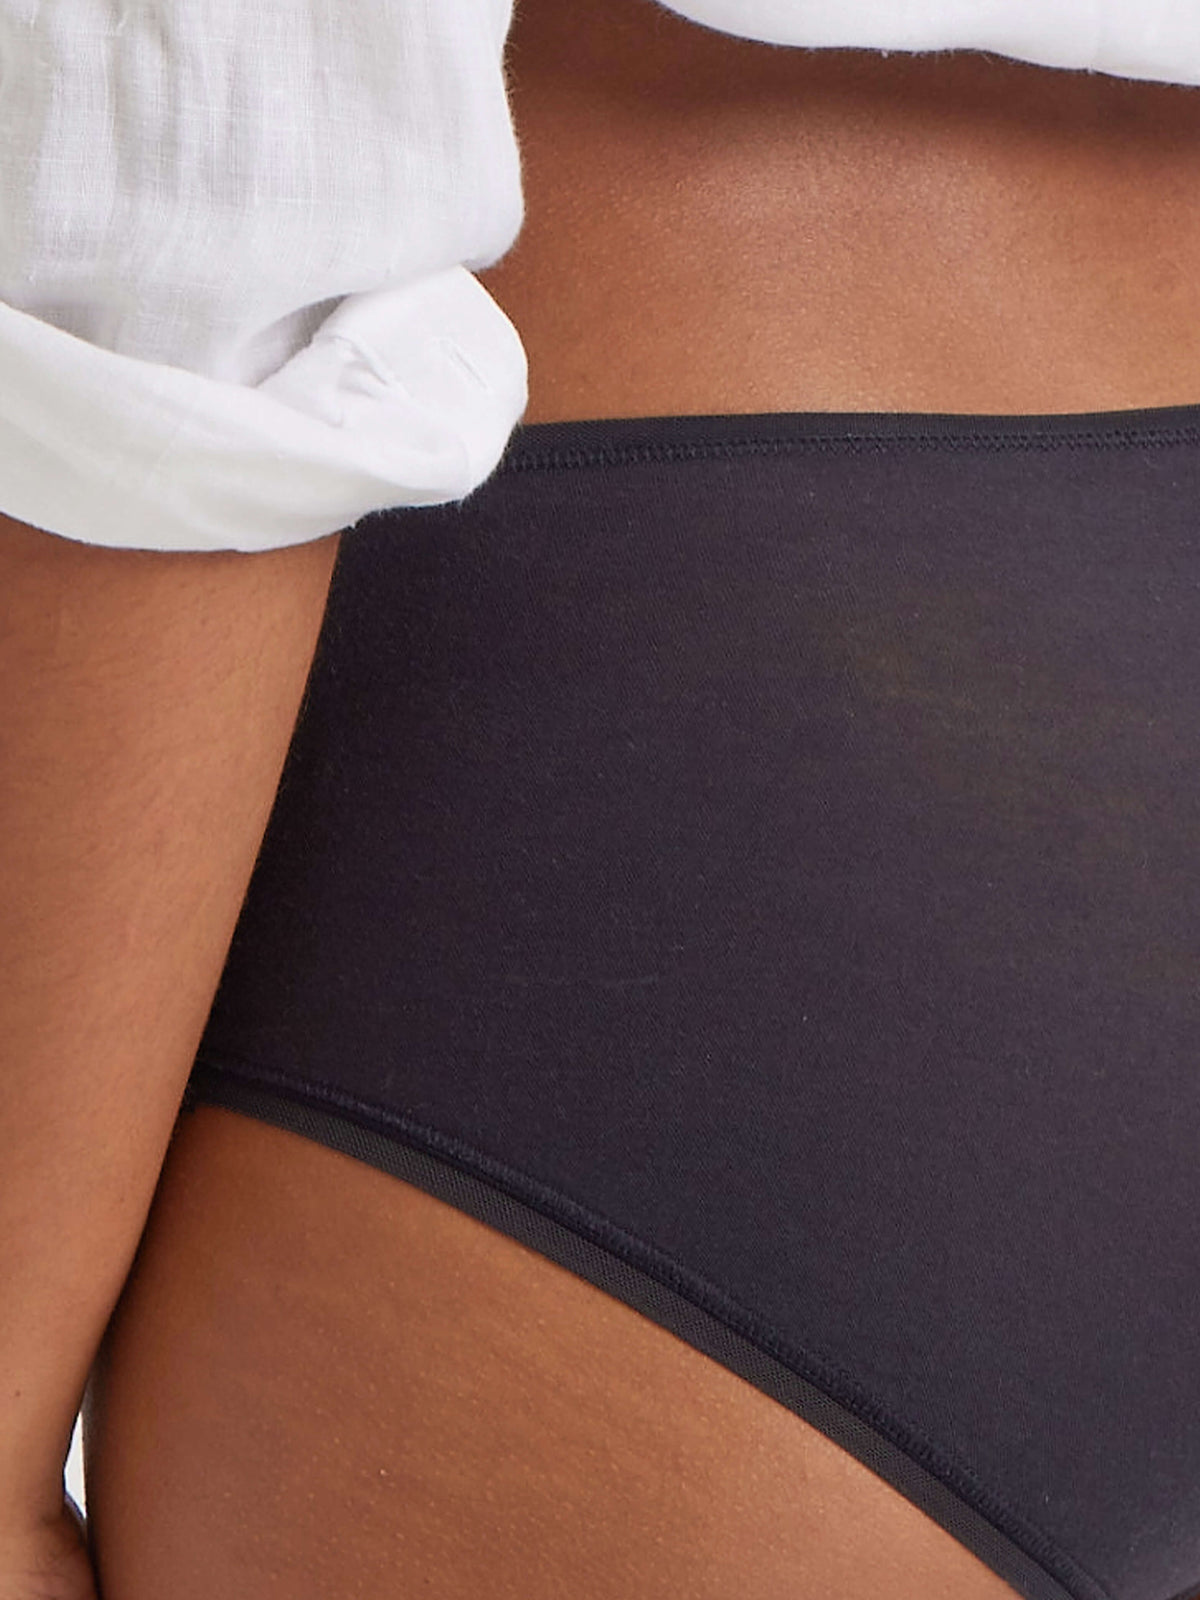 100% Cotton Black Full Brief Underwear by Kayser Lingerie